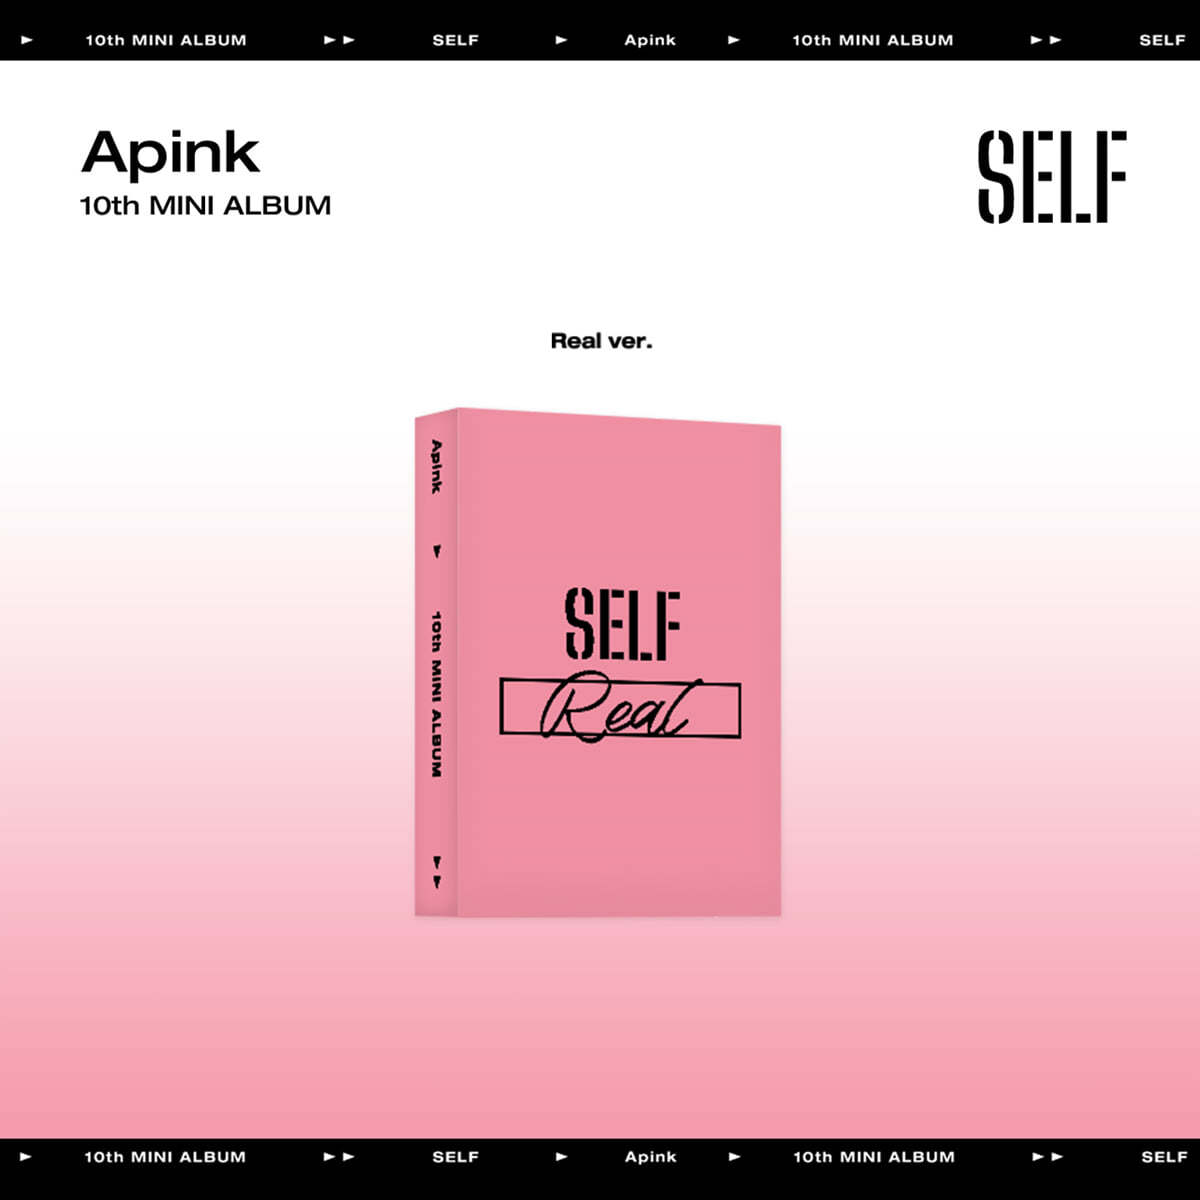 에이핑크 (Apink) - 10th Mini Album : SELF (Platform ver.) [Real ver.]